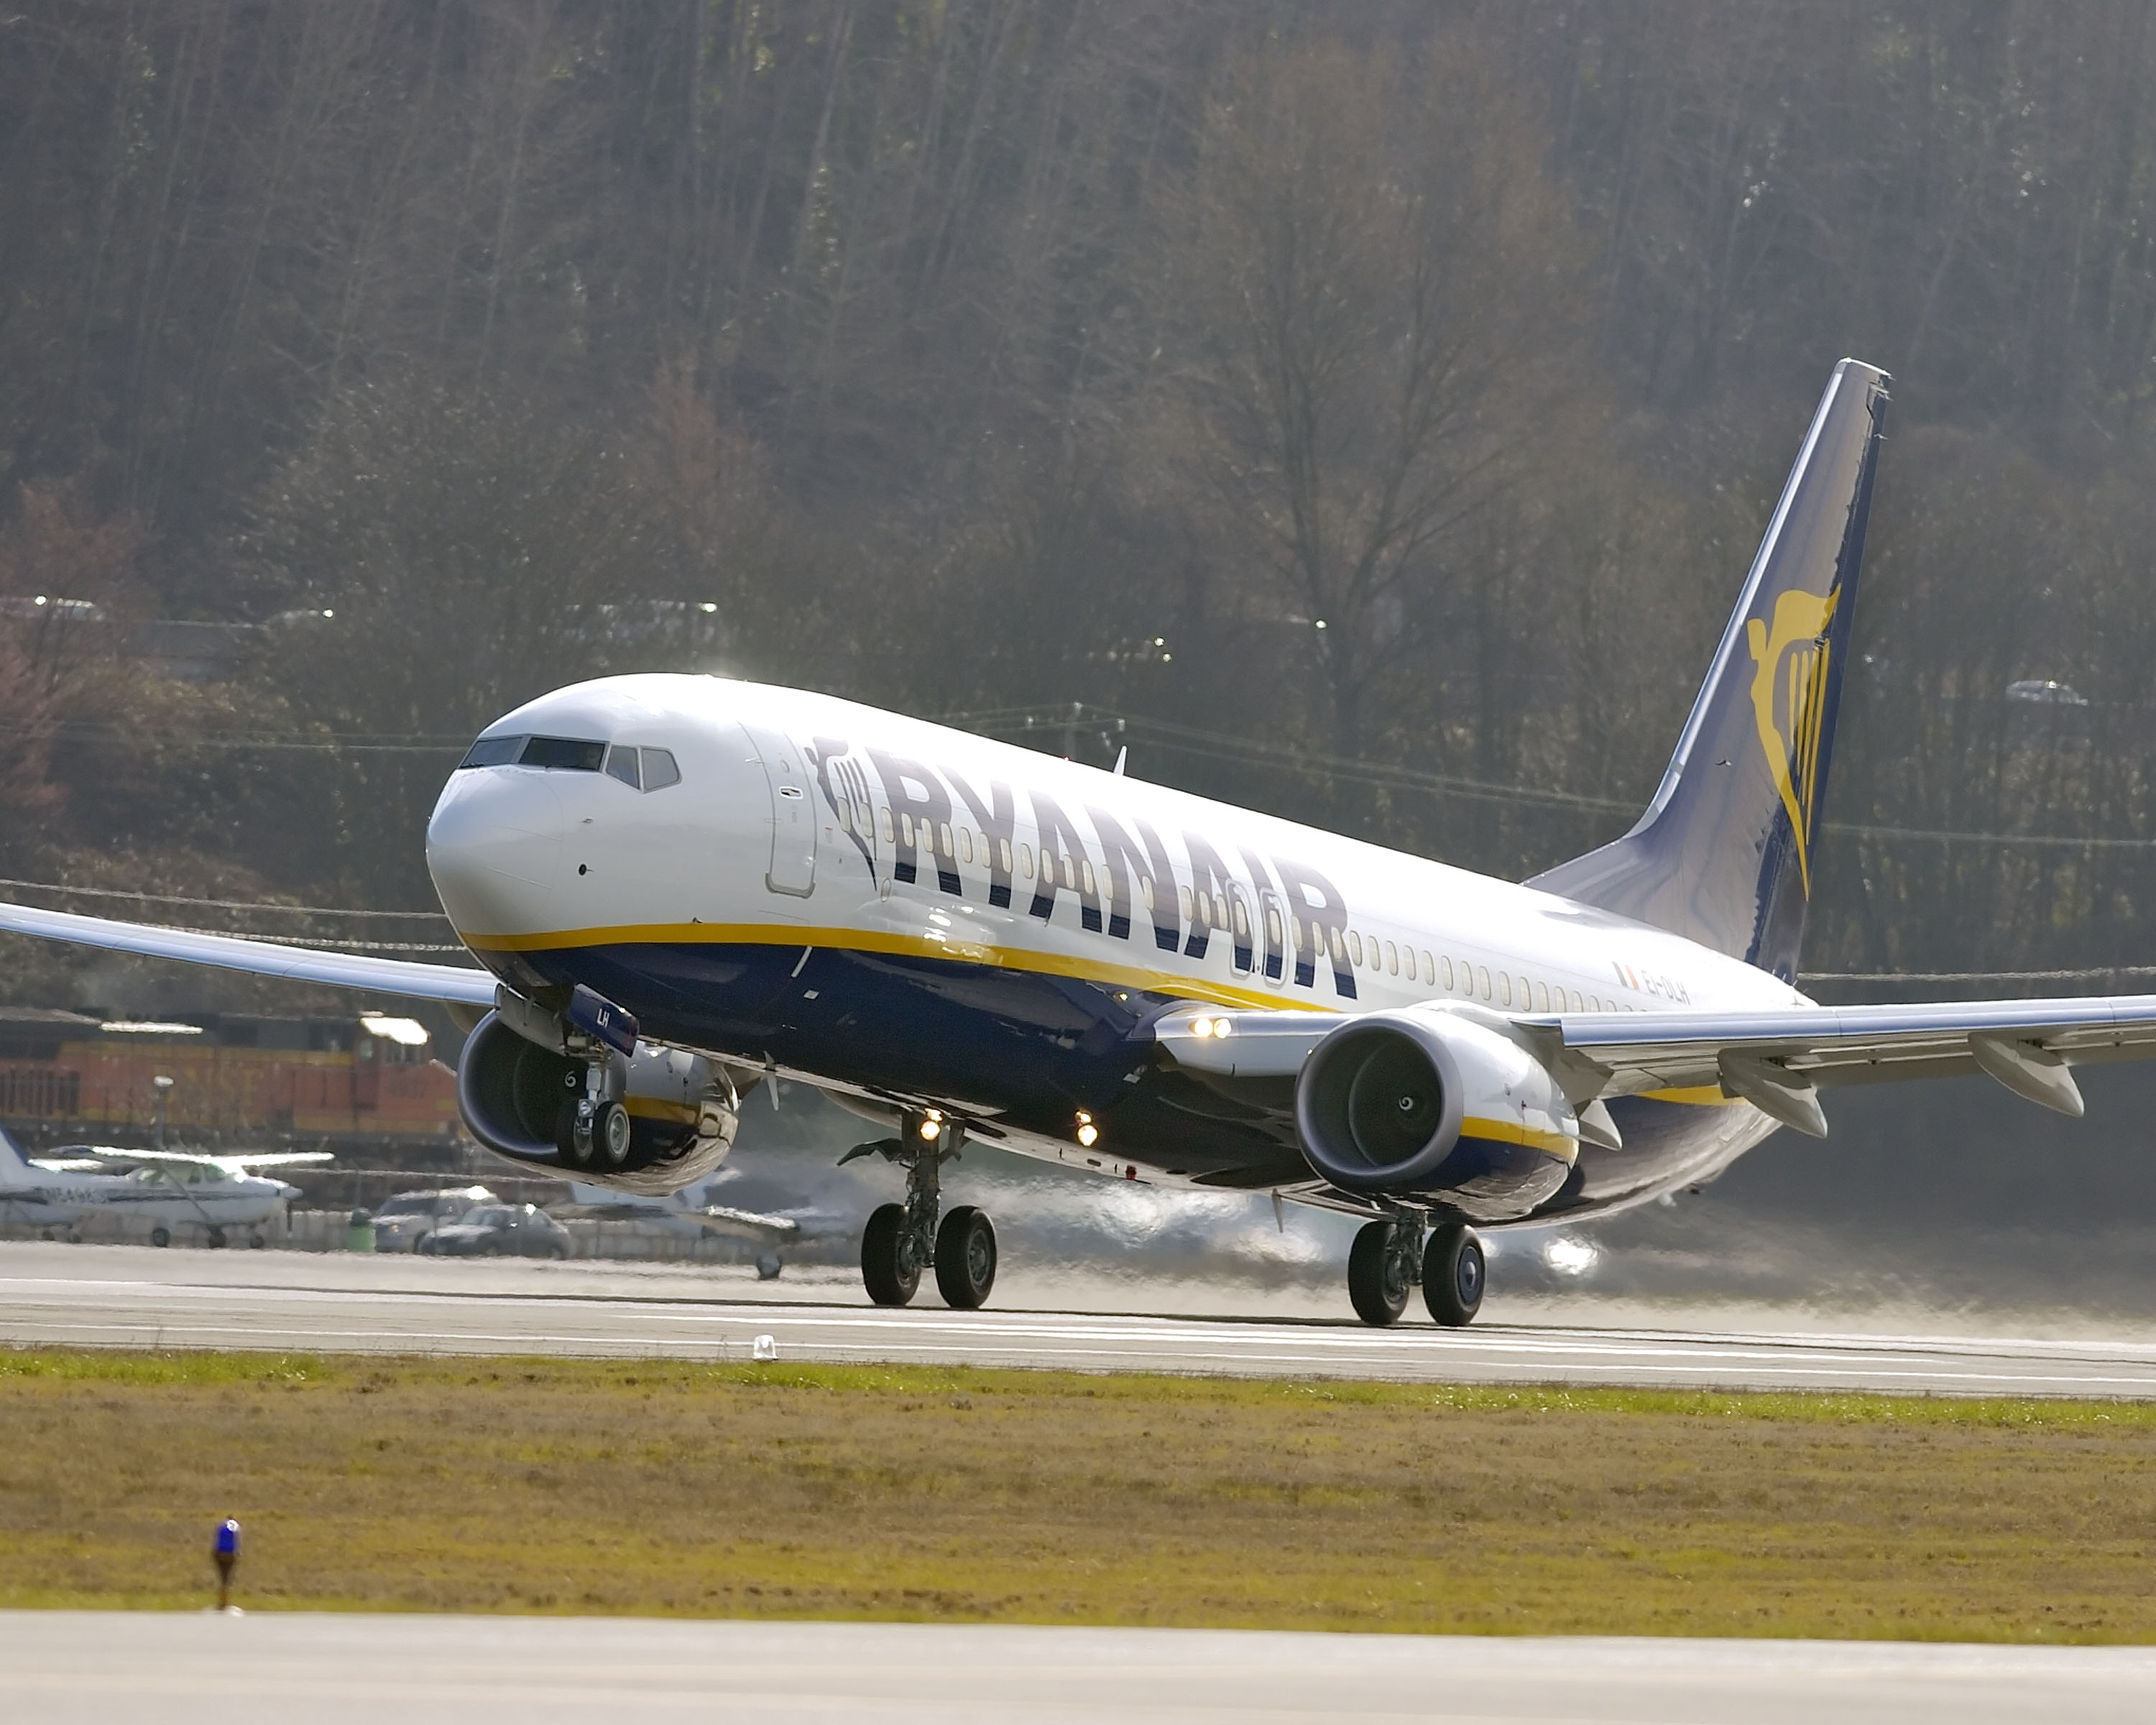 Punktualność Ryanaira W Kwietniu Wyniosła 82%